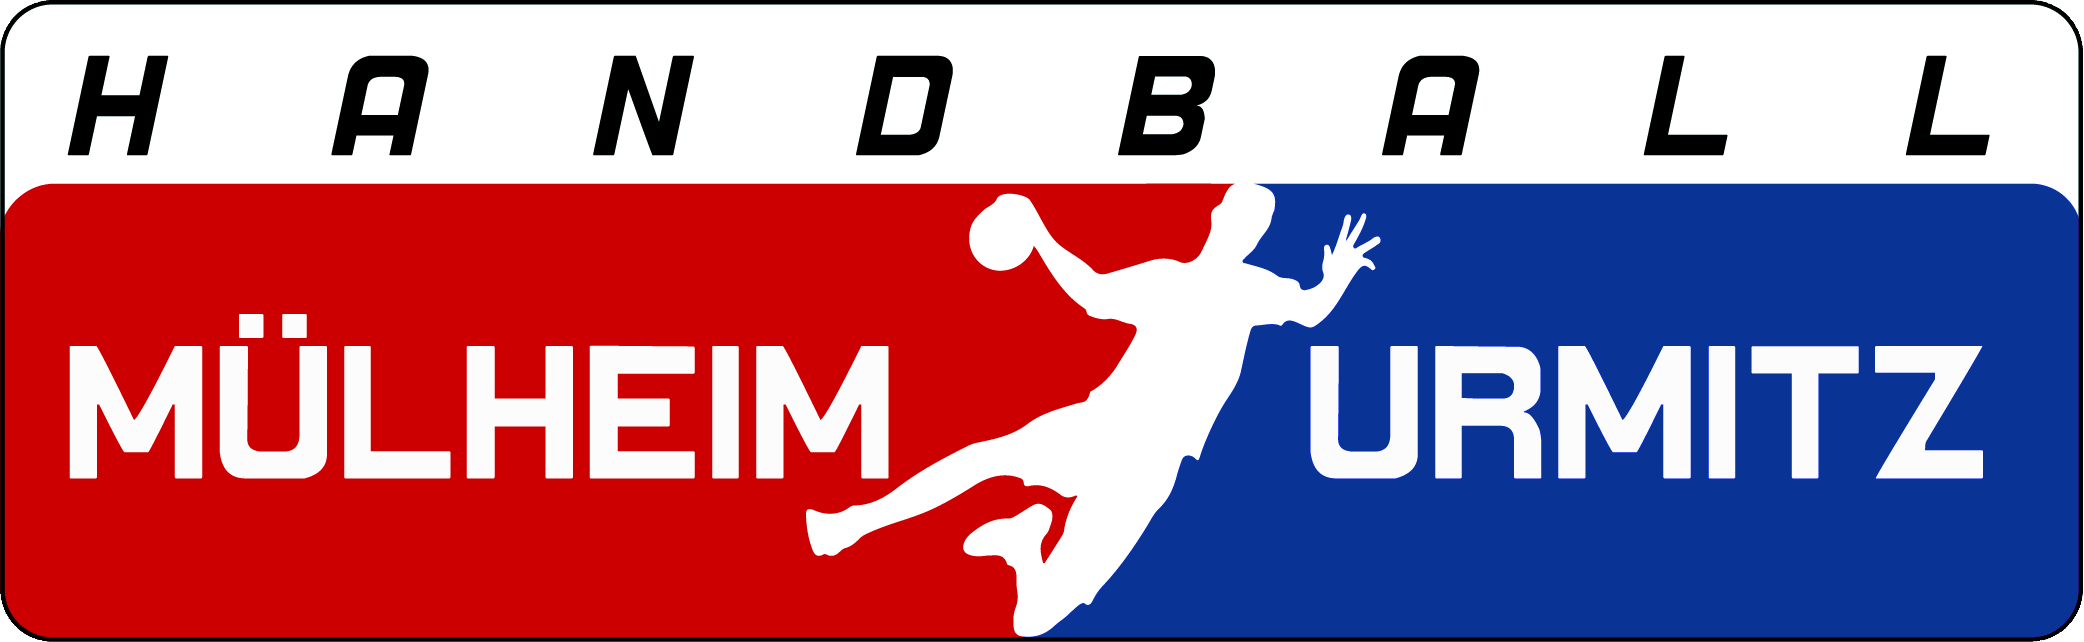 Handball Mülheim-Urmitz